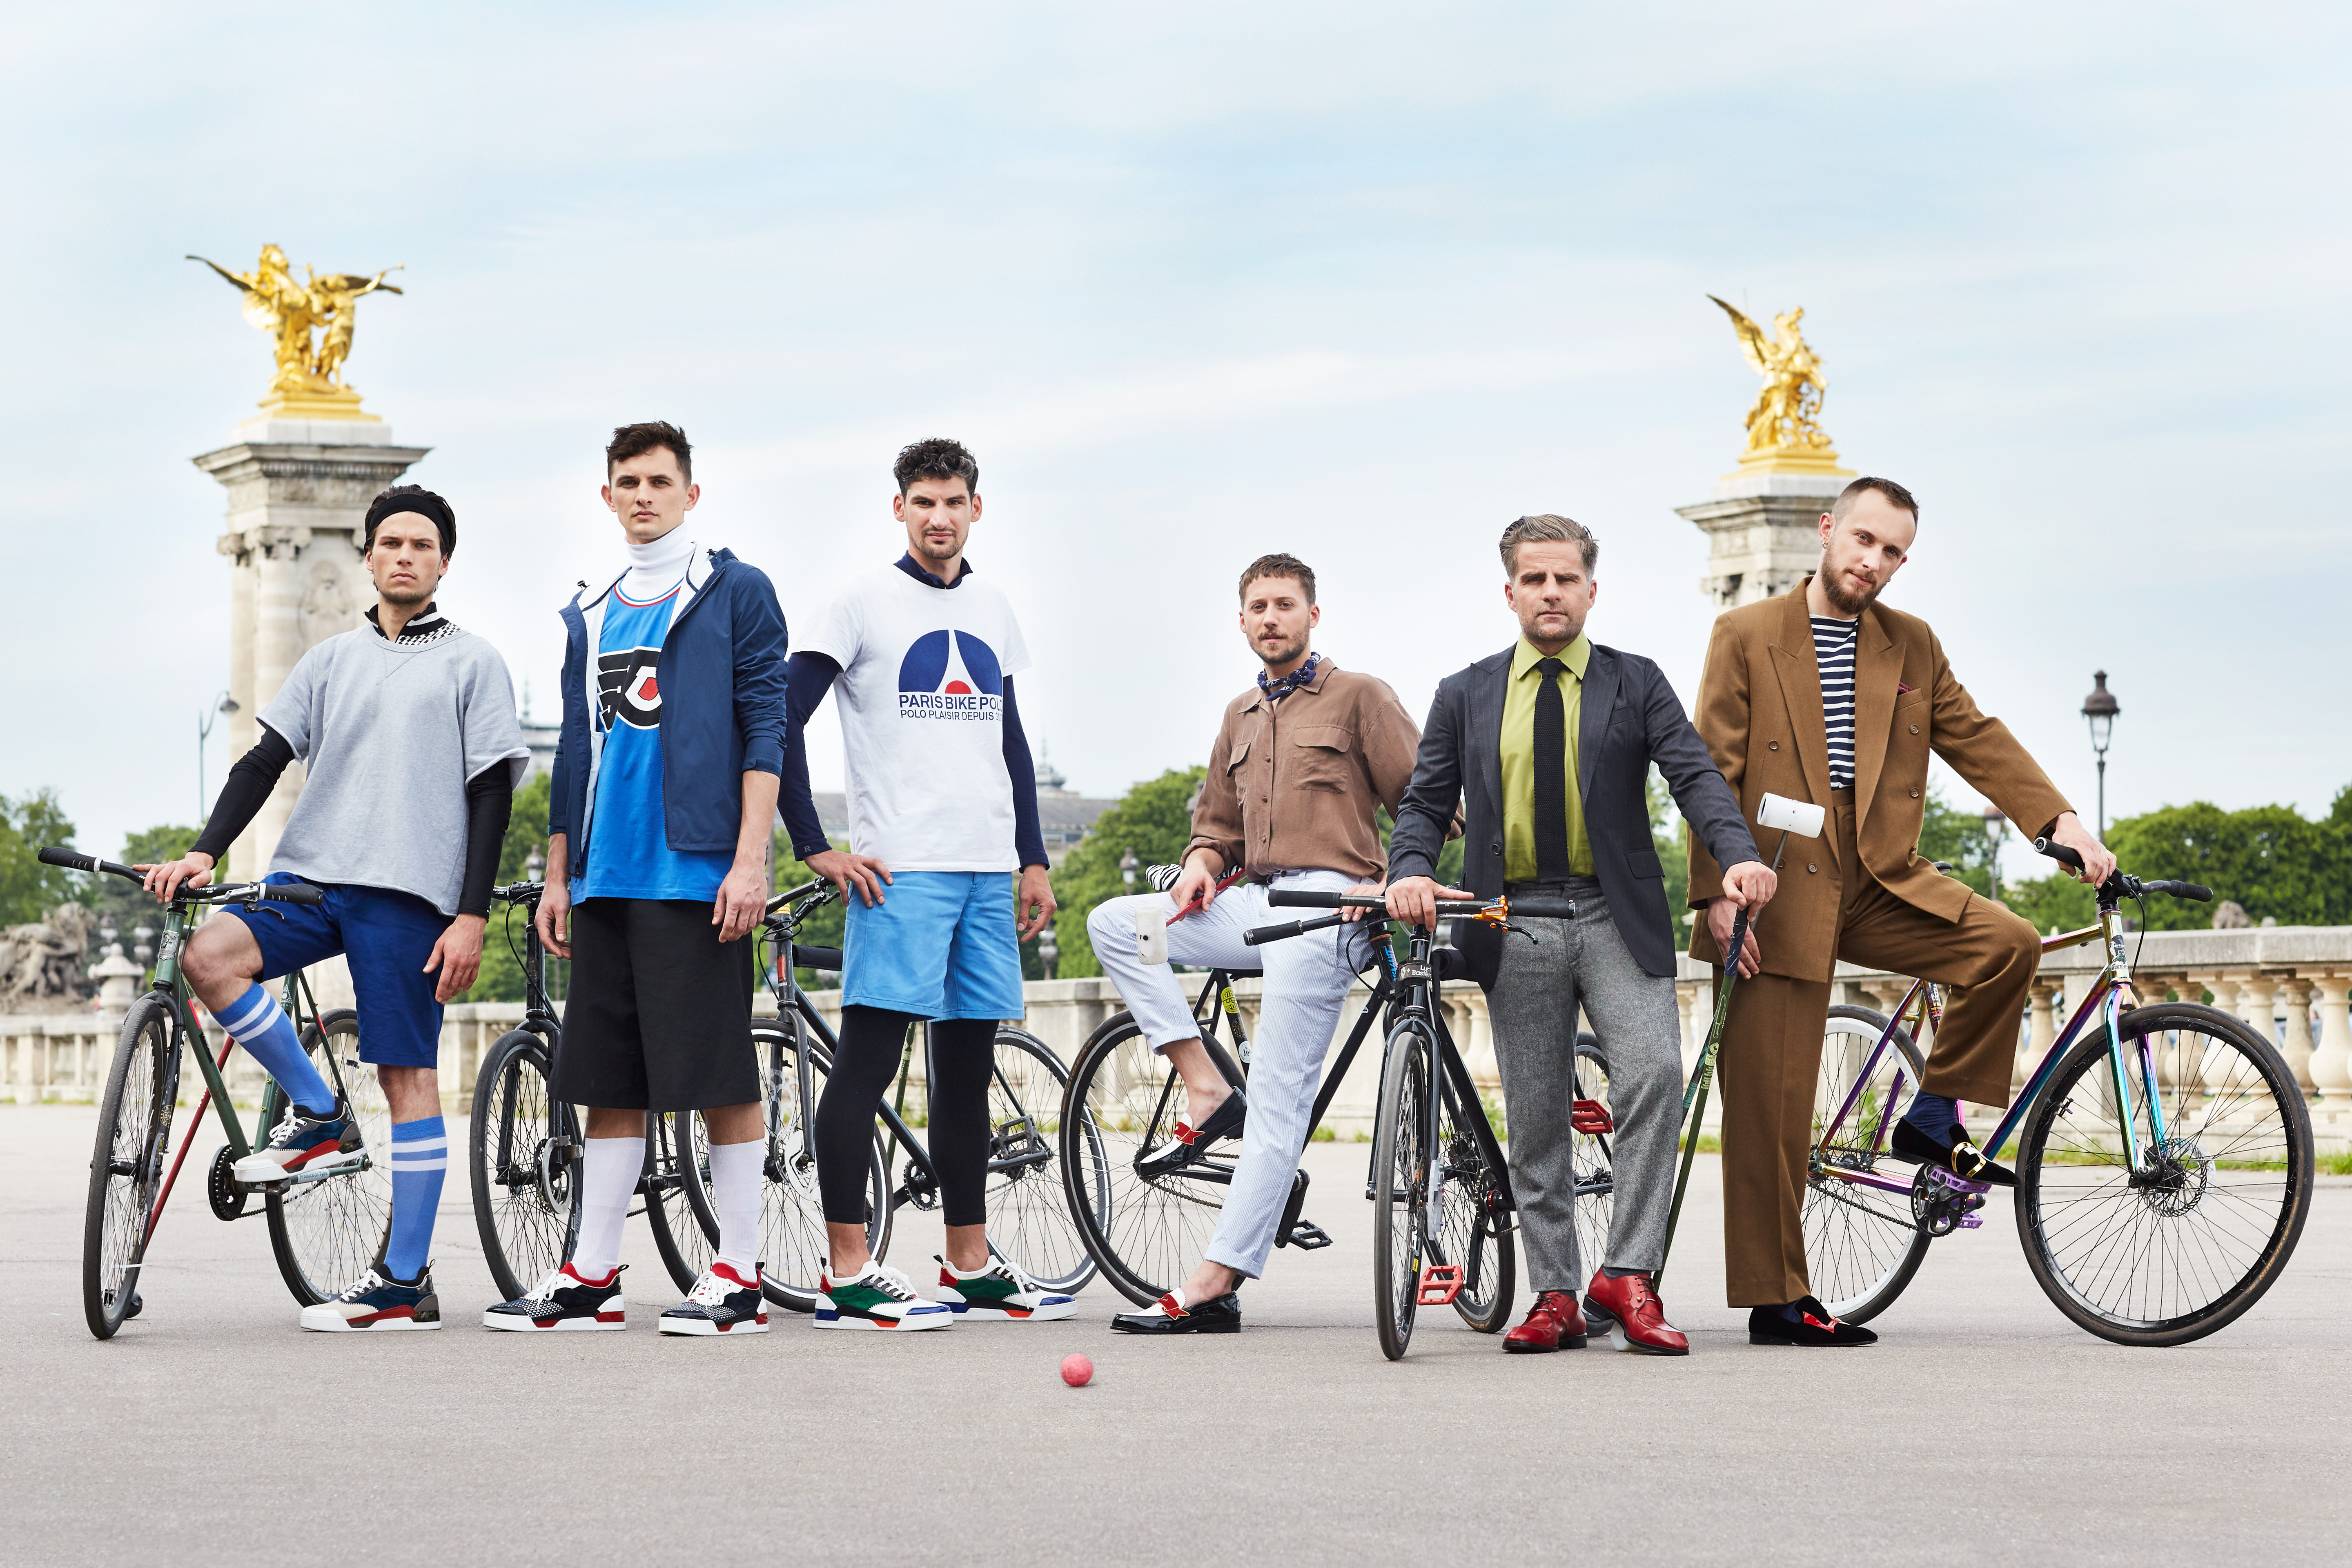 O designer Christian Louboutin reuniu um time internacional para um torneio de Bike Polo | Foto: Divulgação.